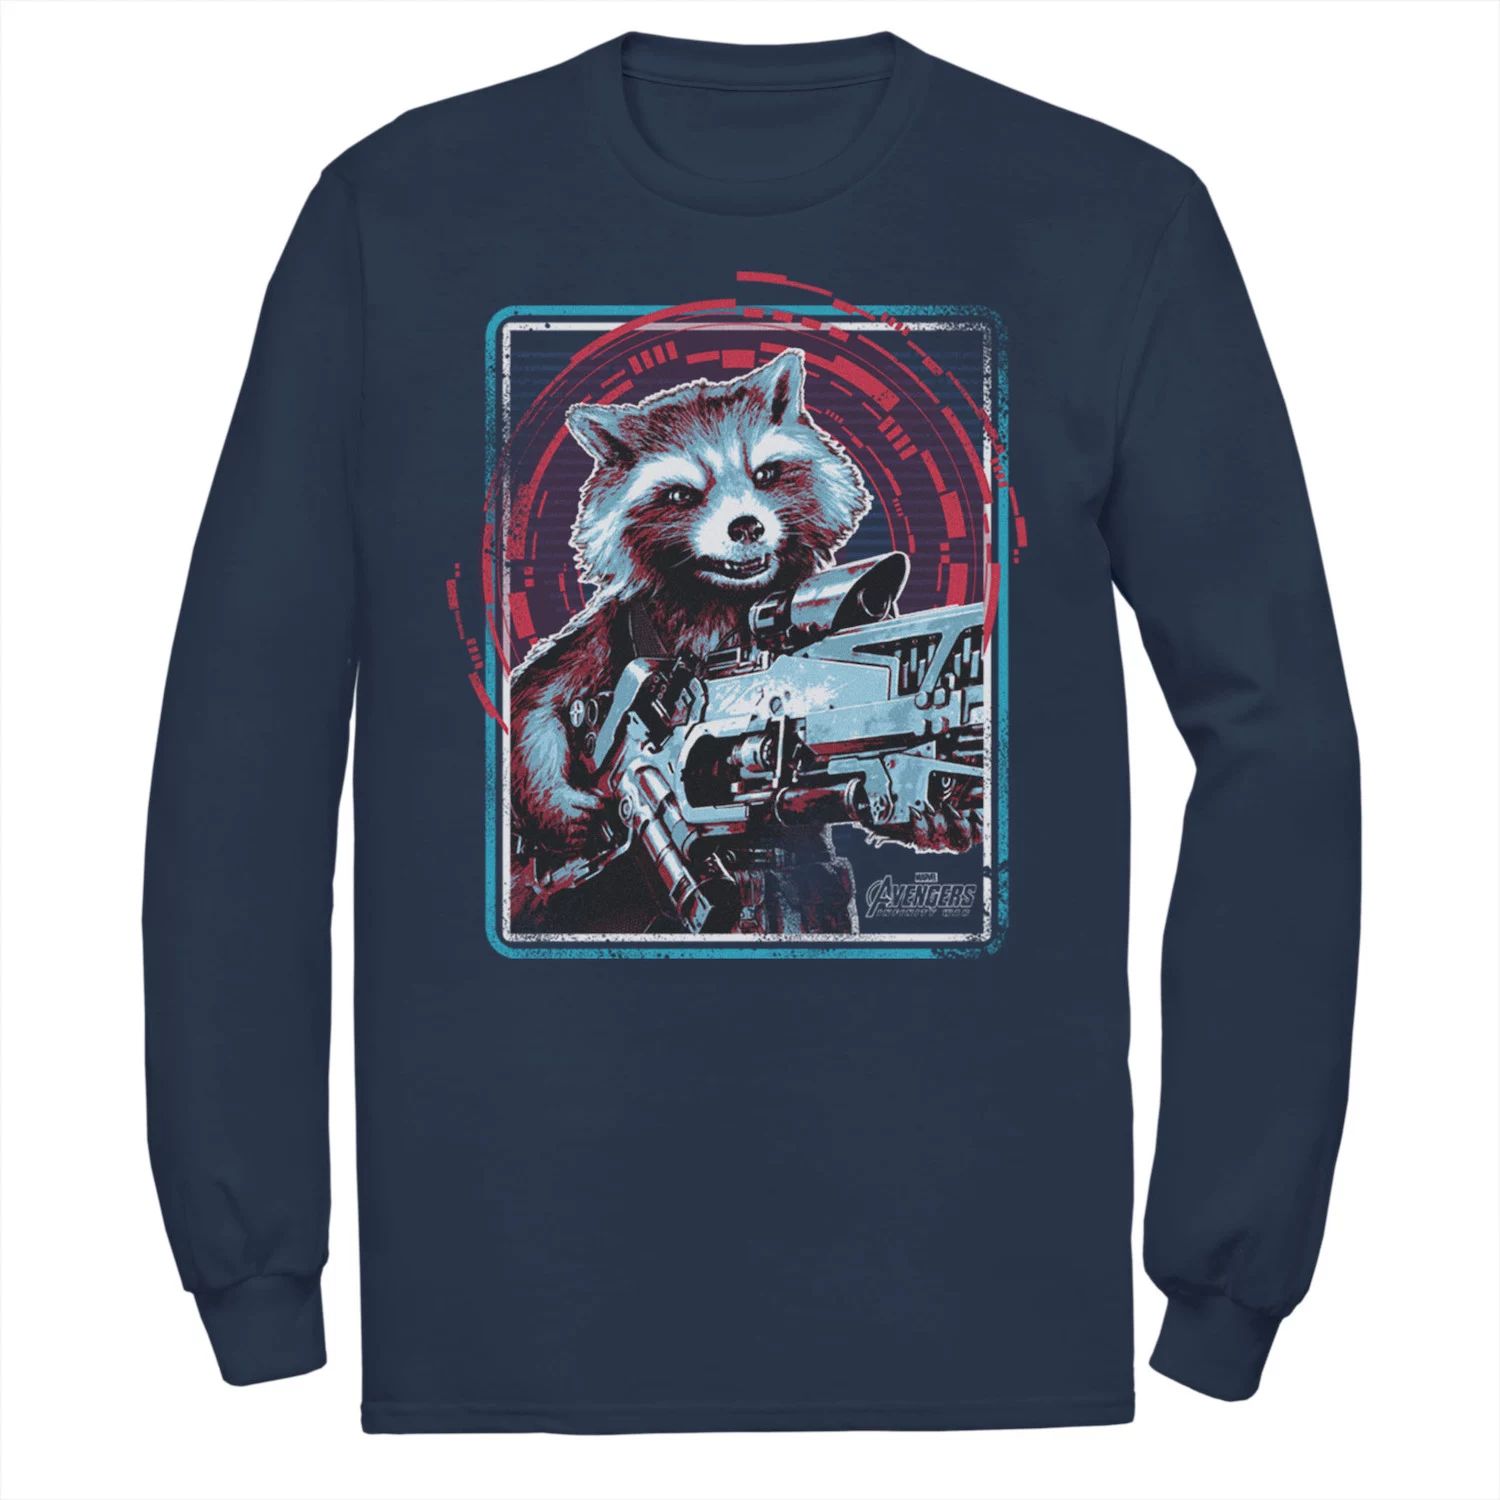 Мужская футболка с цифровым абстрактным изображением Marvel Infinity War Rocket Raccoon rocket raccoon grounde